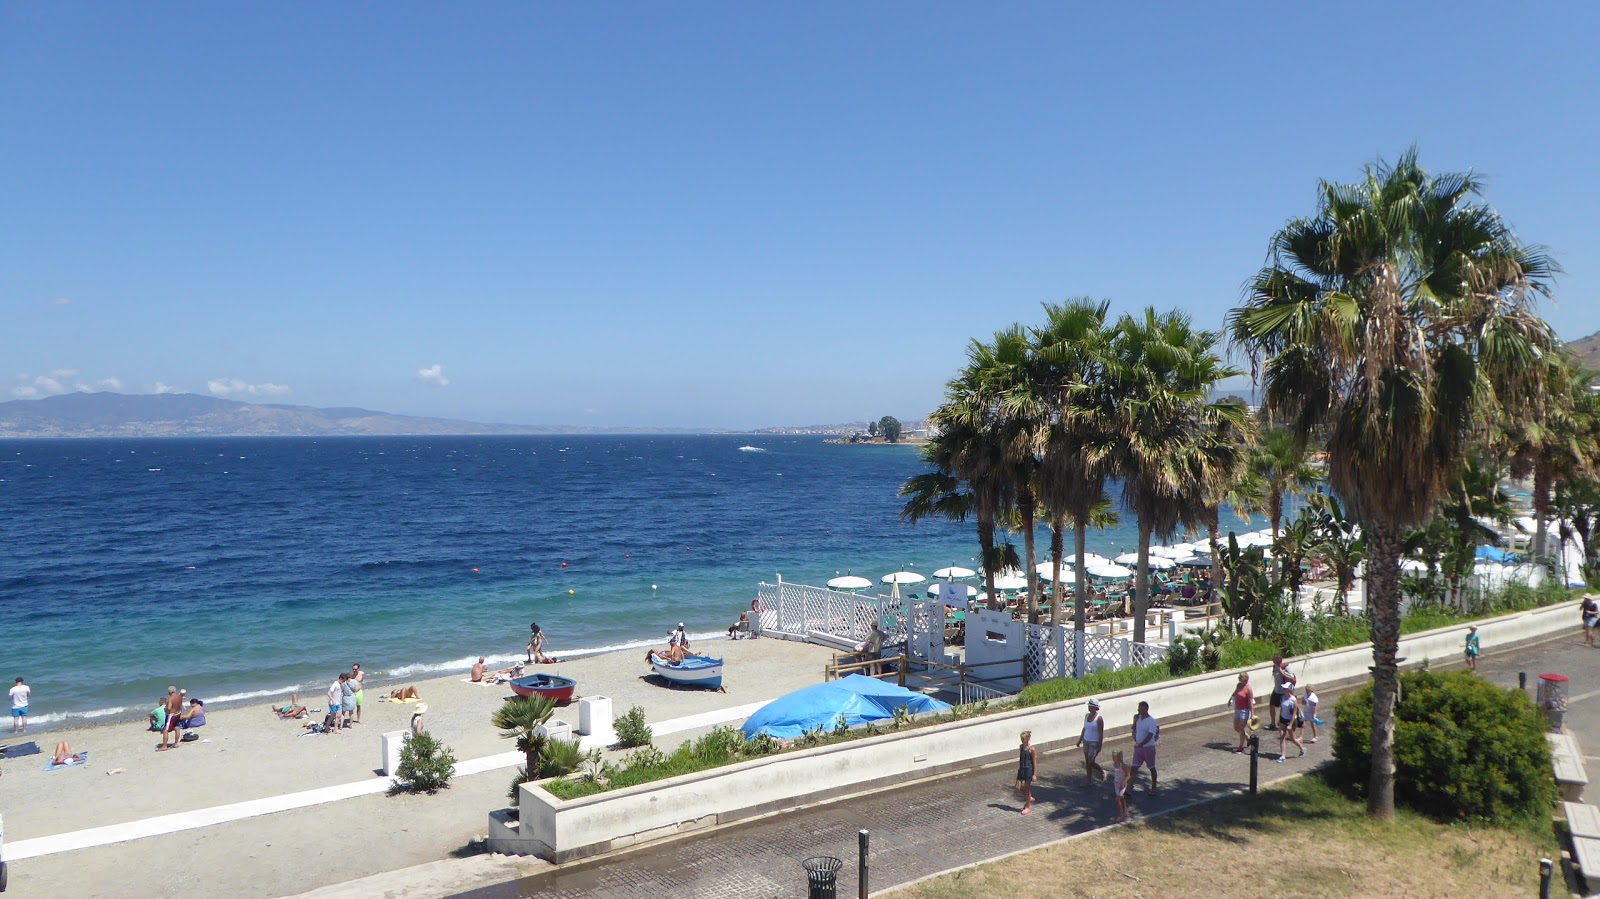 Reggio Calabria beach'in fotoğrafı geniş plaj ile birlikte